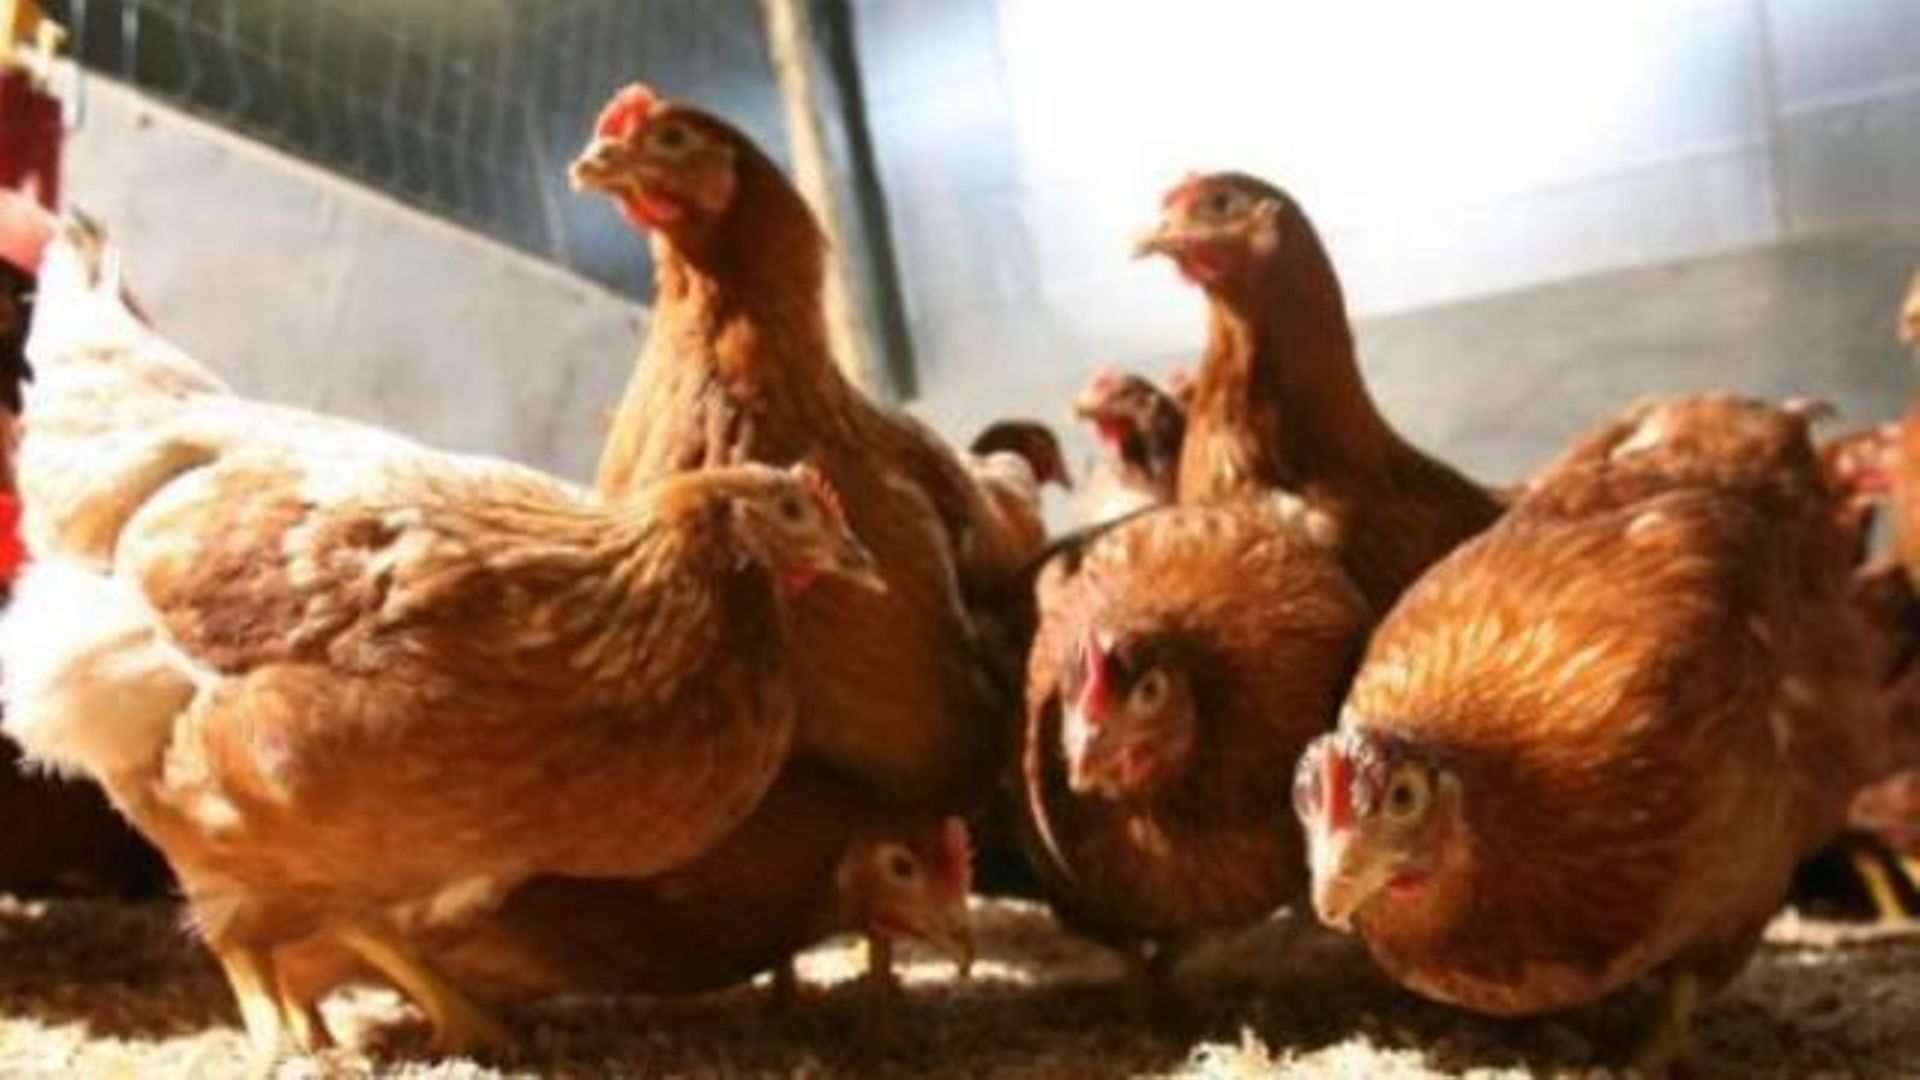 Antibiotiques dans la viande - Le nombre de bactéries productrices d'ESBL est en baisse dans la volaille